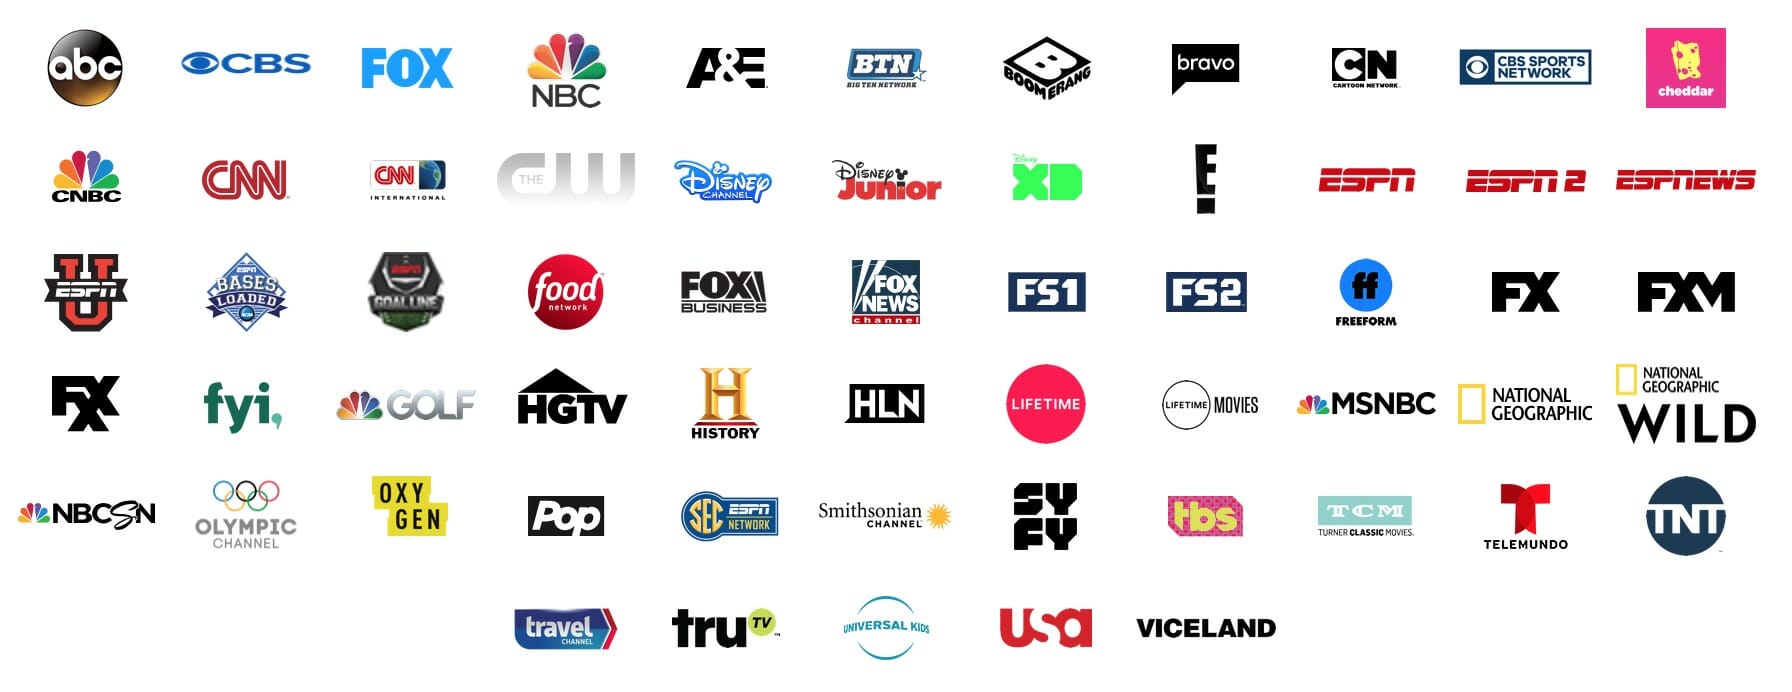 HGTV Live Stream: 6 Ways to Watch HGTV Online for Free